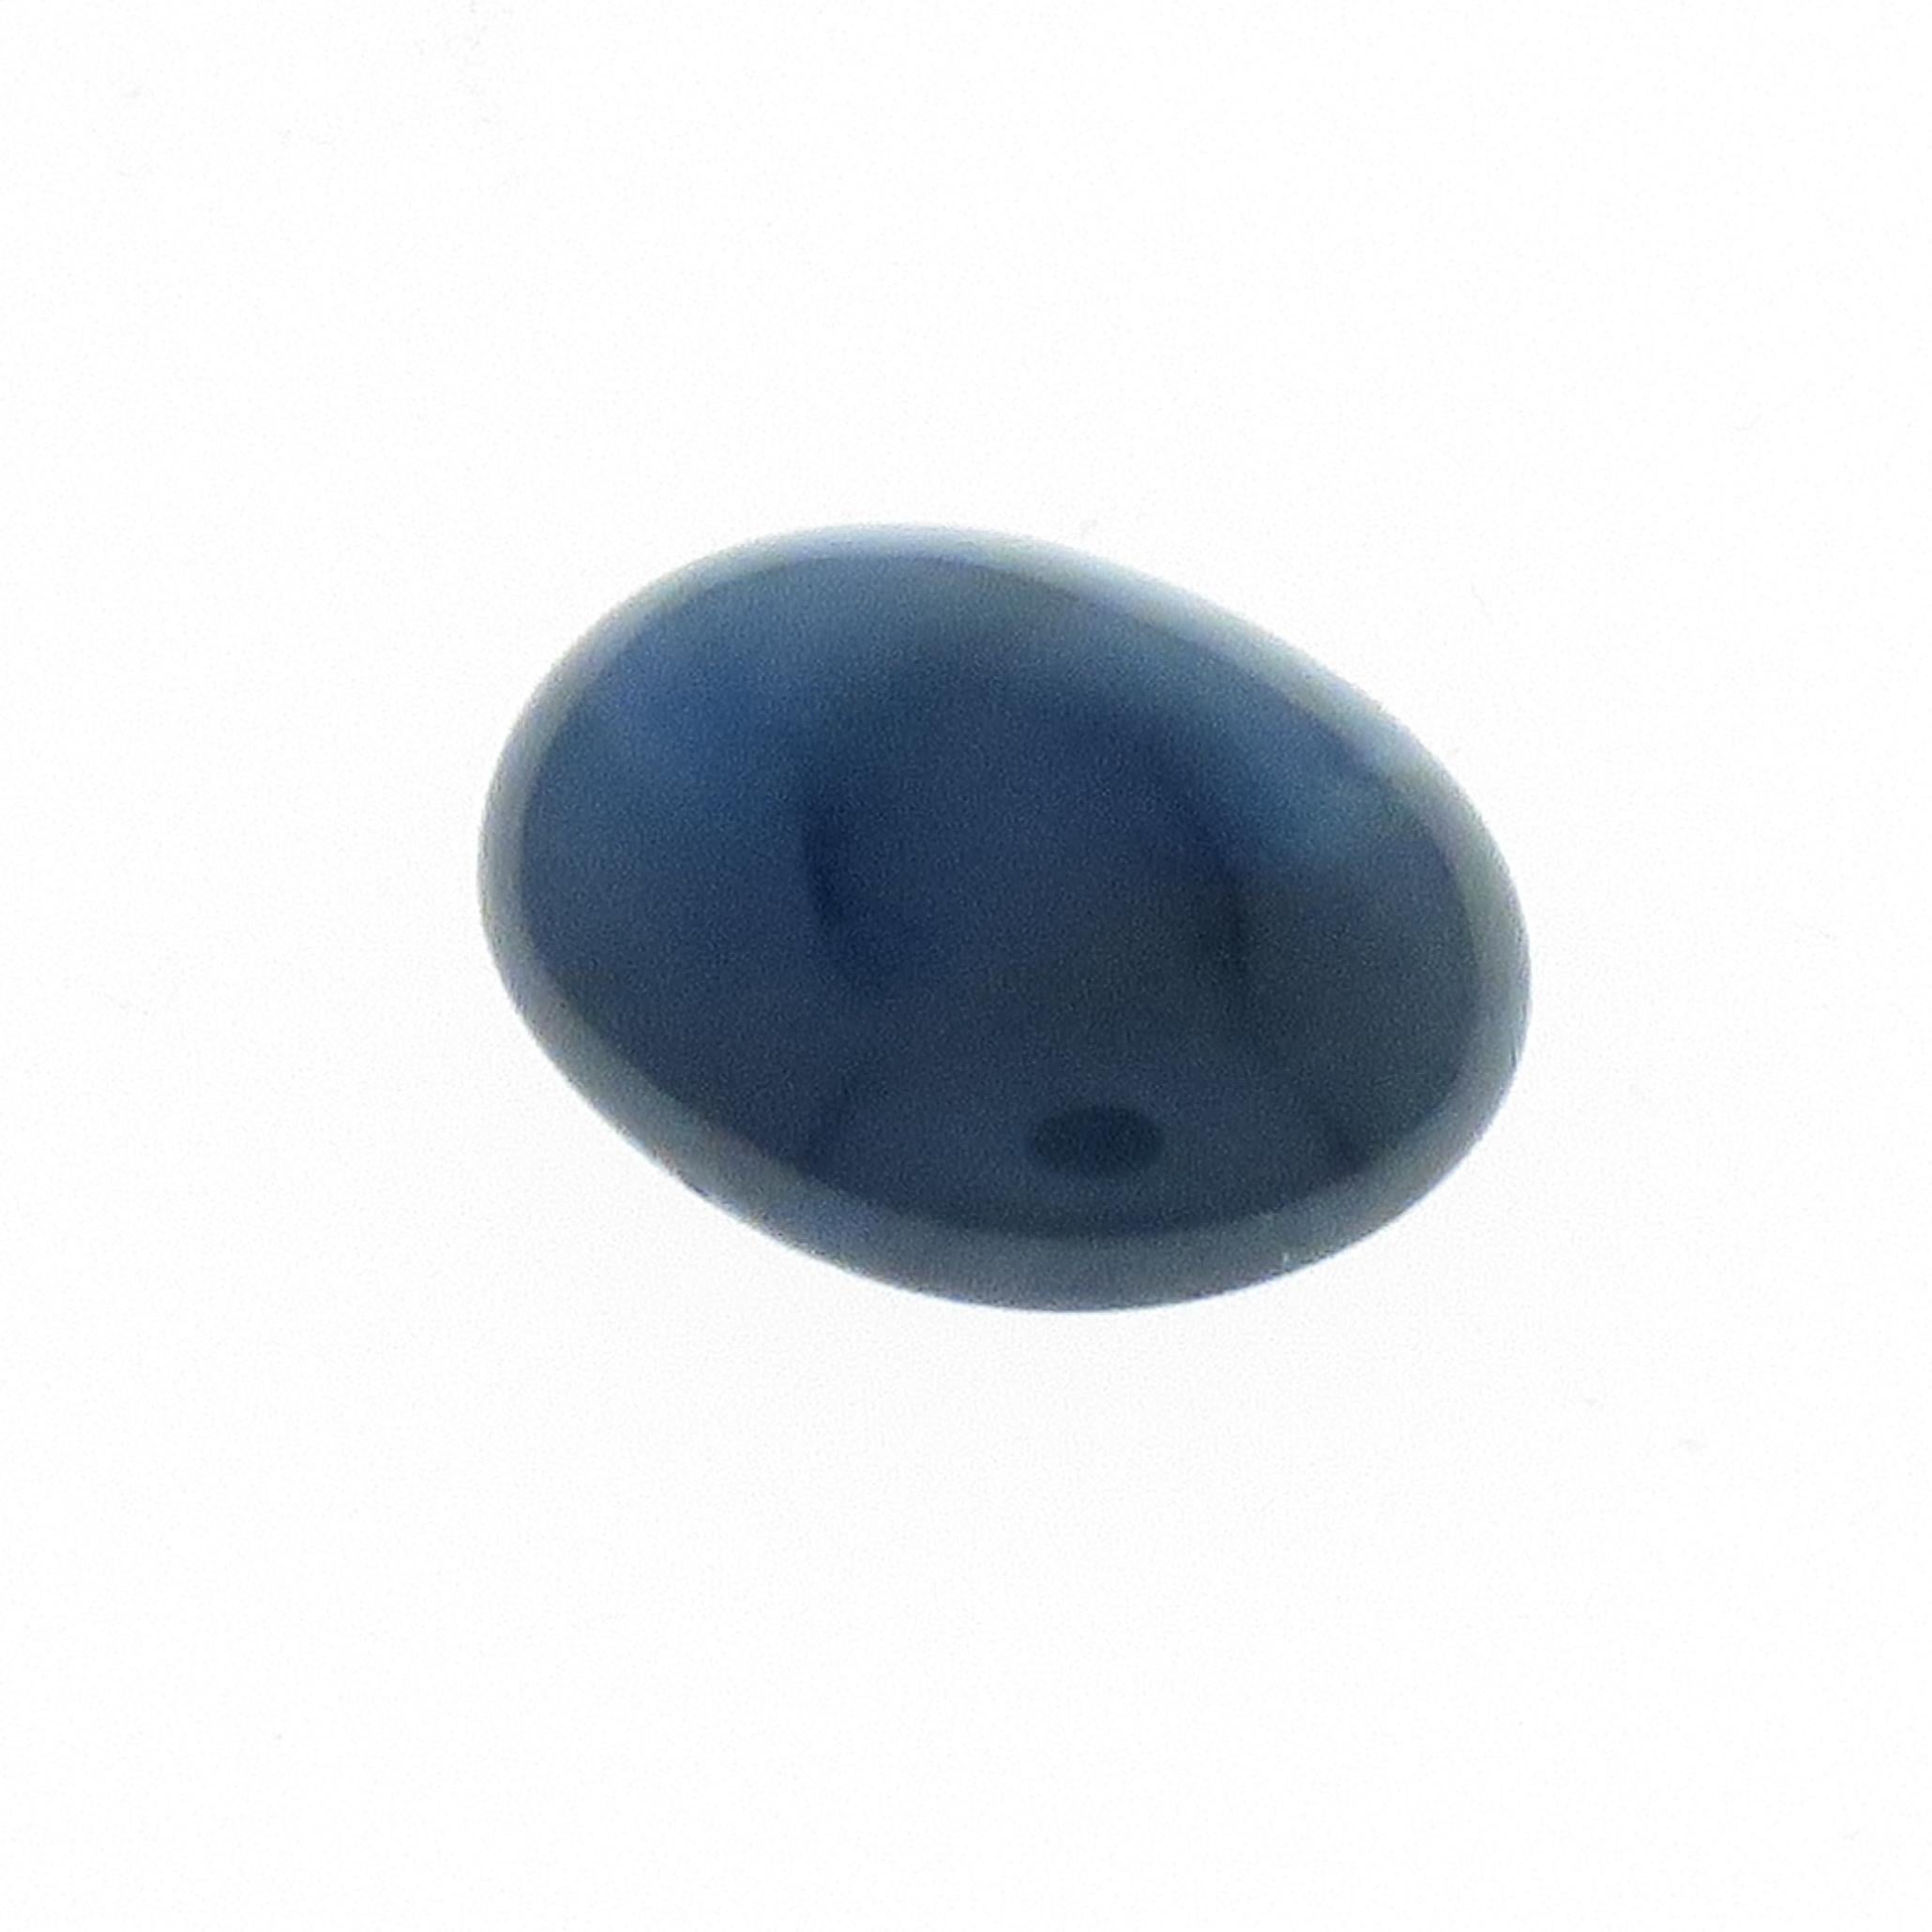 Zaffiro blu taglio cabochon biconvesso ovale di 10.12 carati, non trattato non riscaldato Blu scuro trasparente.
Certificato gemmologico 